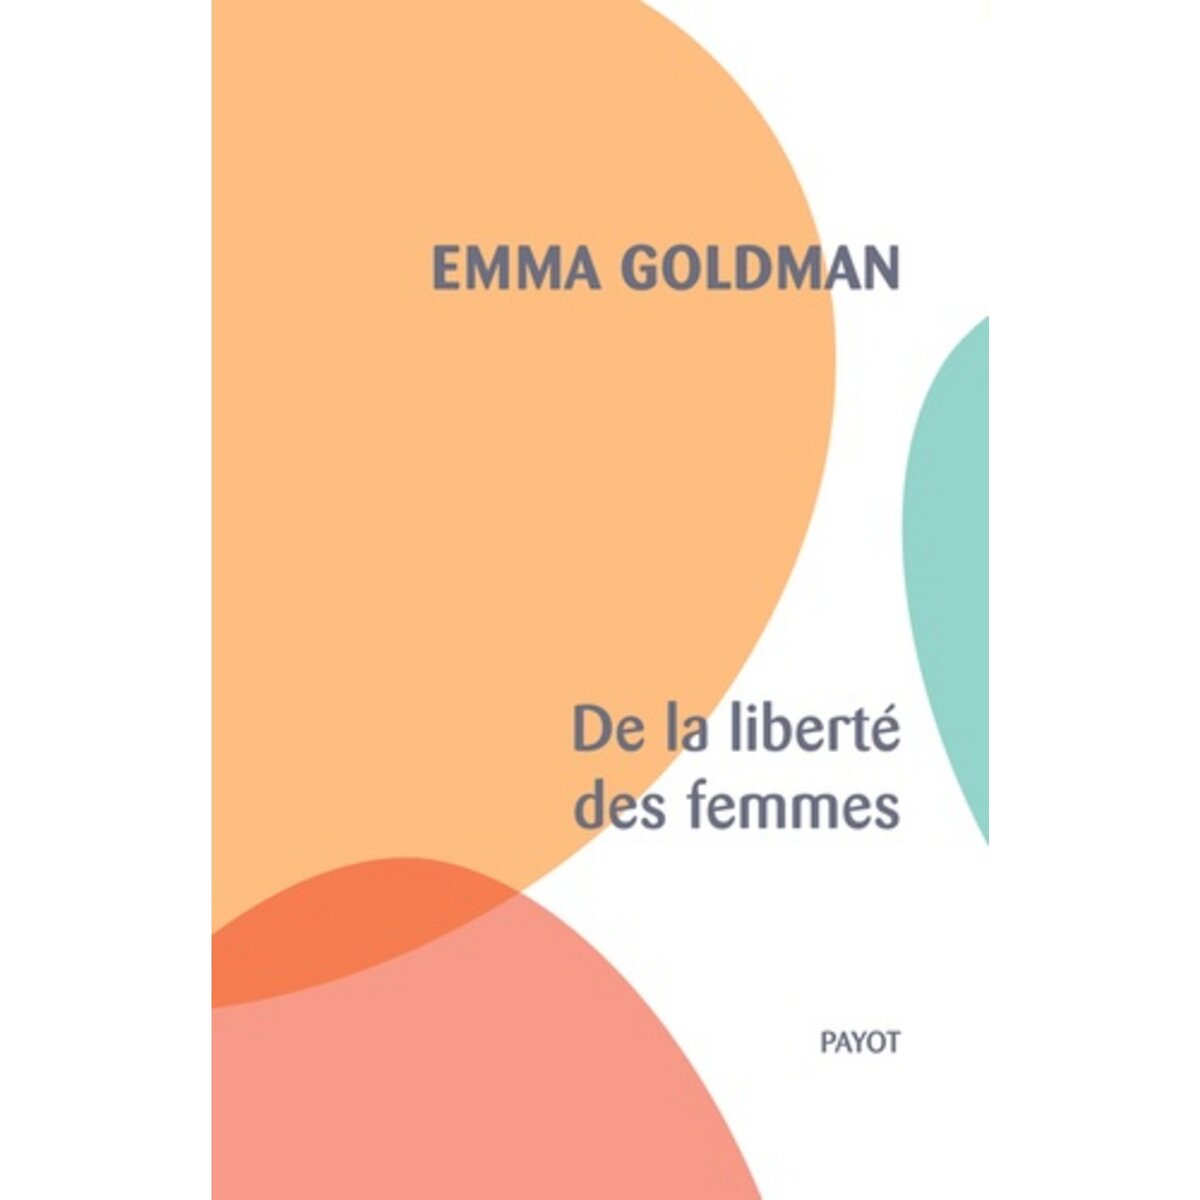  DE LA LIBERTE DES FEMMES, Goldman Emma